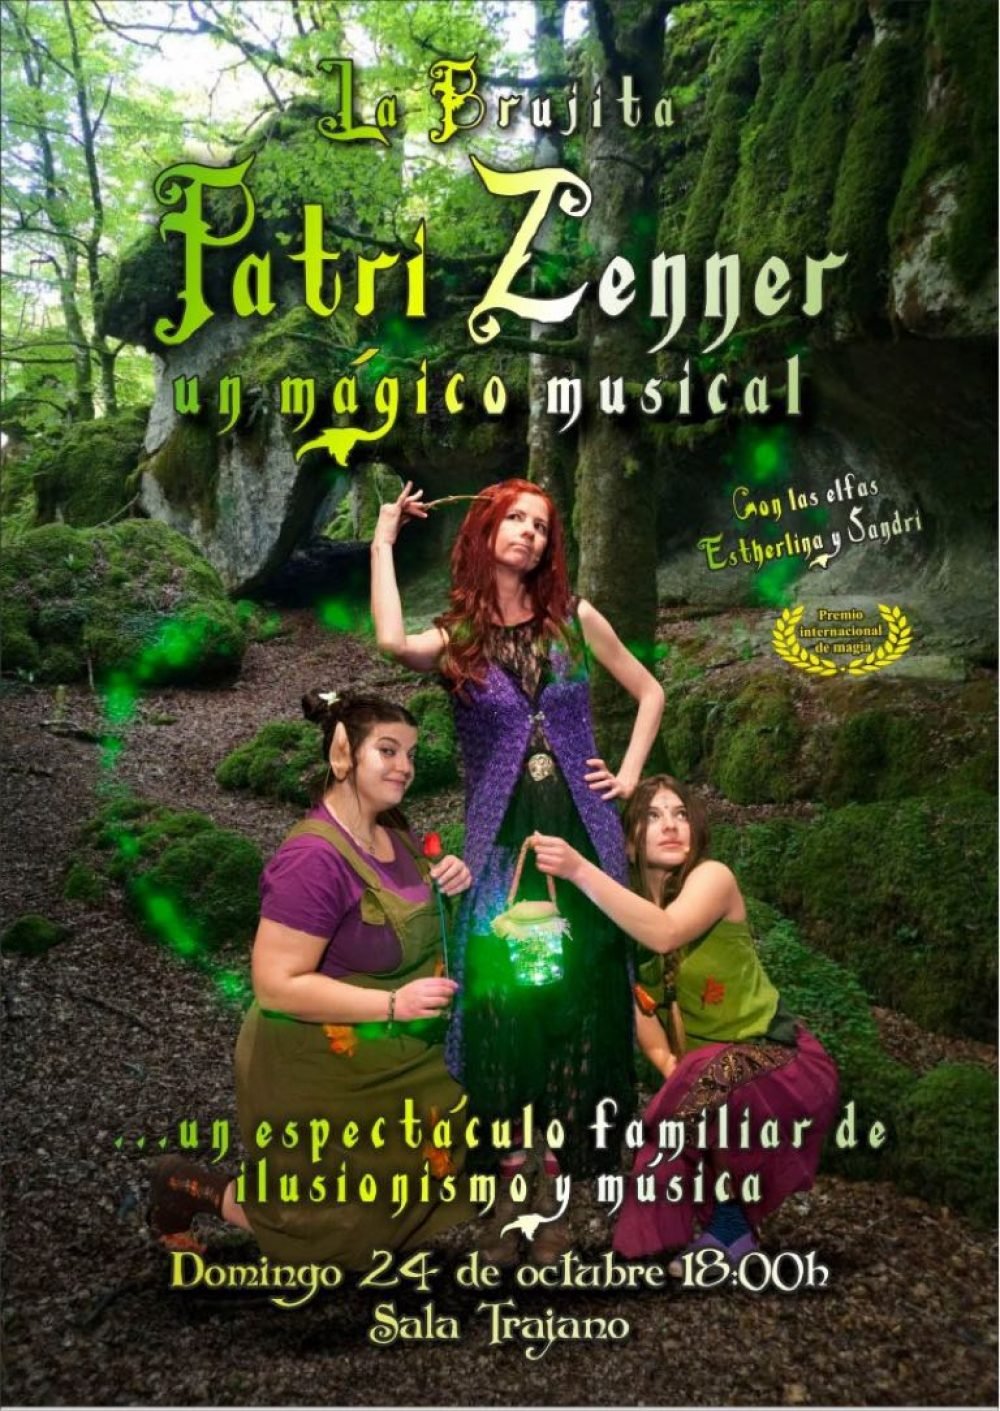 La brujita Patri Zenner, un mágico musical